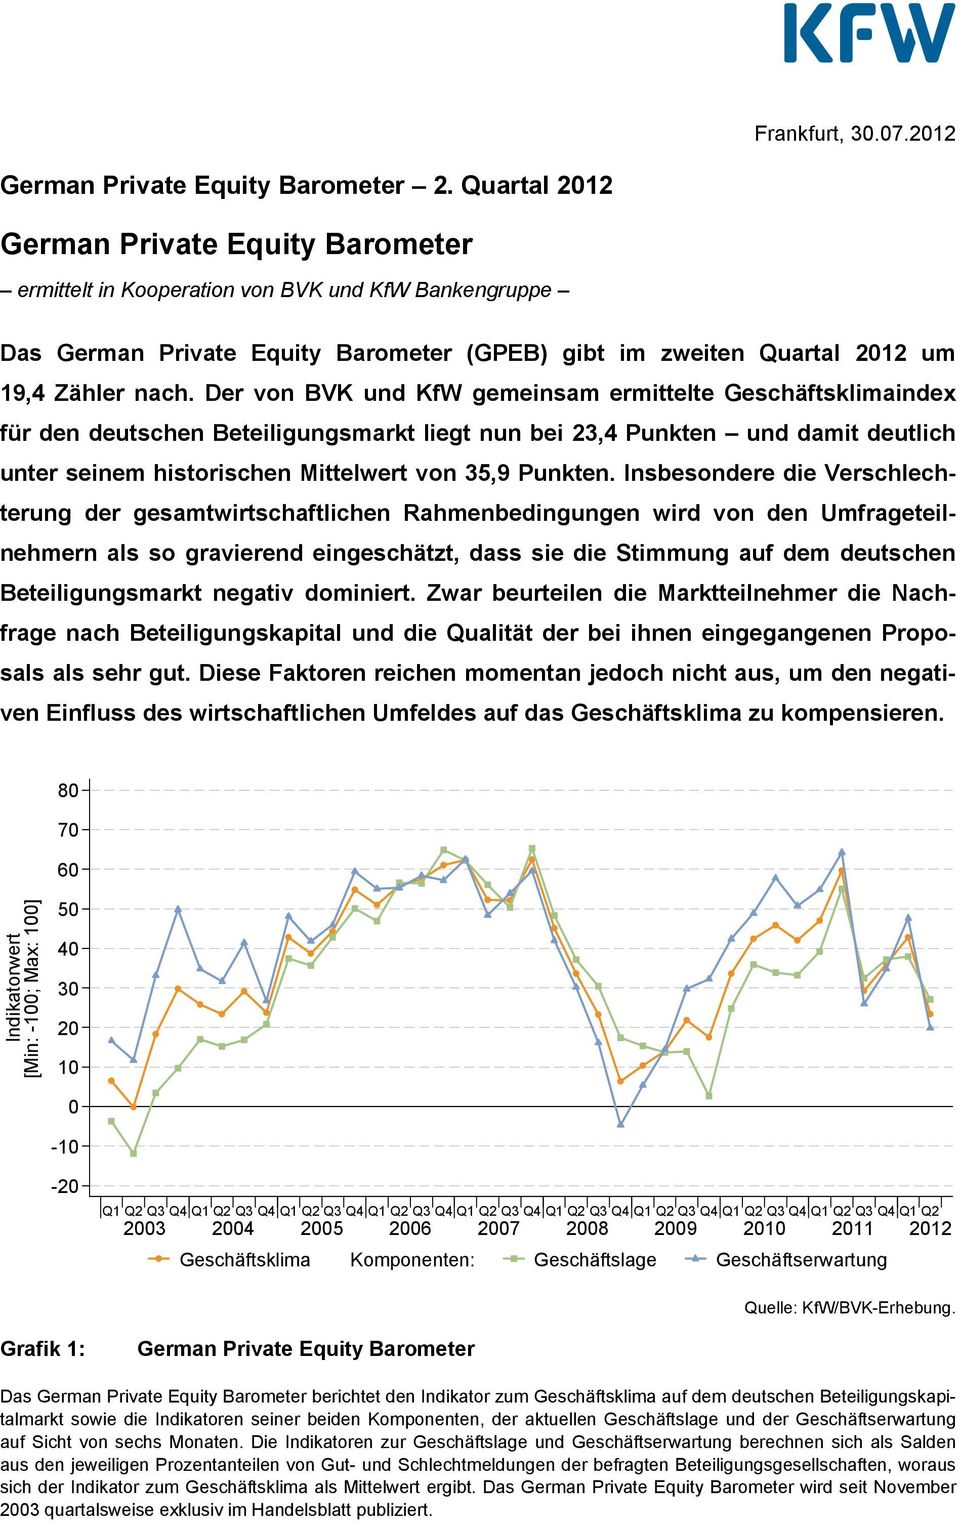 Der von BVK und KfW gemeinsam ermittelte Geschäftsklimaindex für den deutschen Beteiligungsmarkt liegt nun bei 23,4 Punkten und damit deutlich unter seinem historischen Mittelwert von 35,9 Punkten.